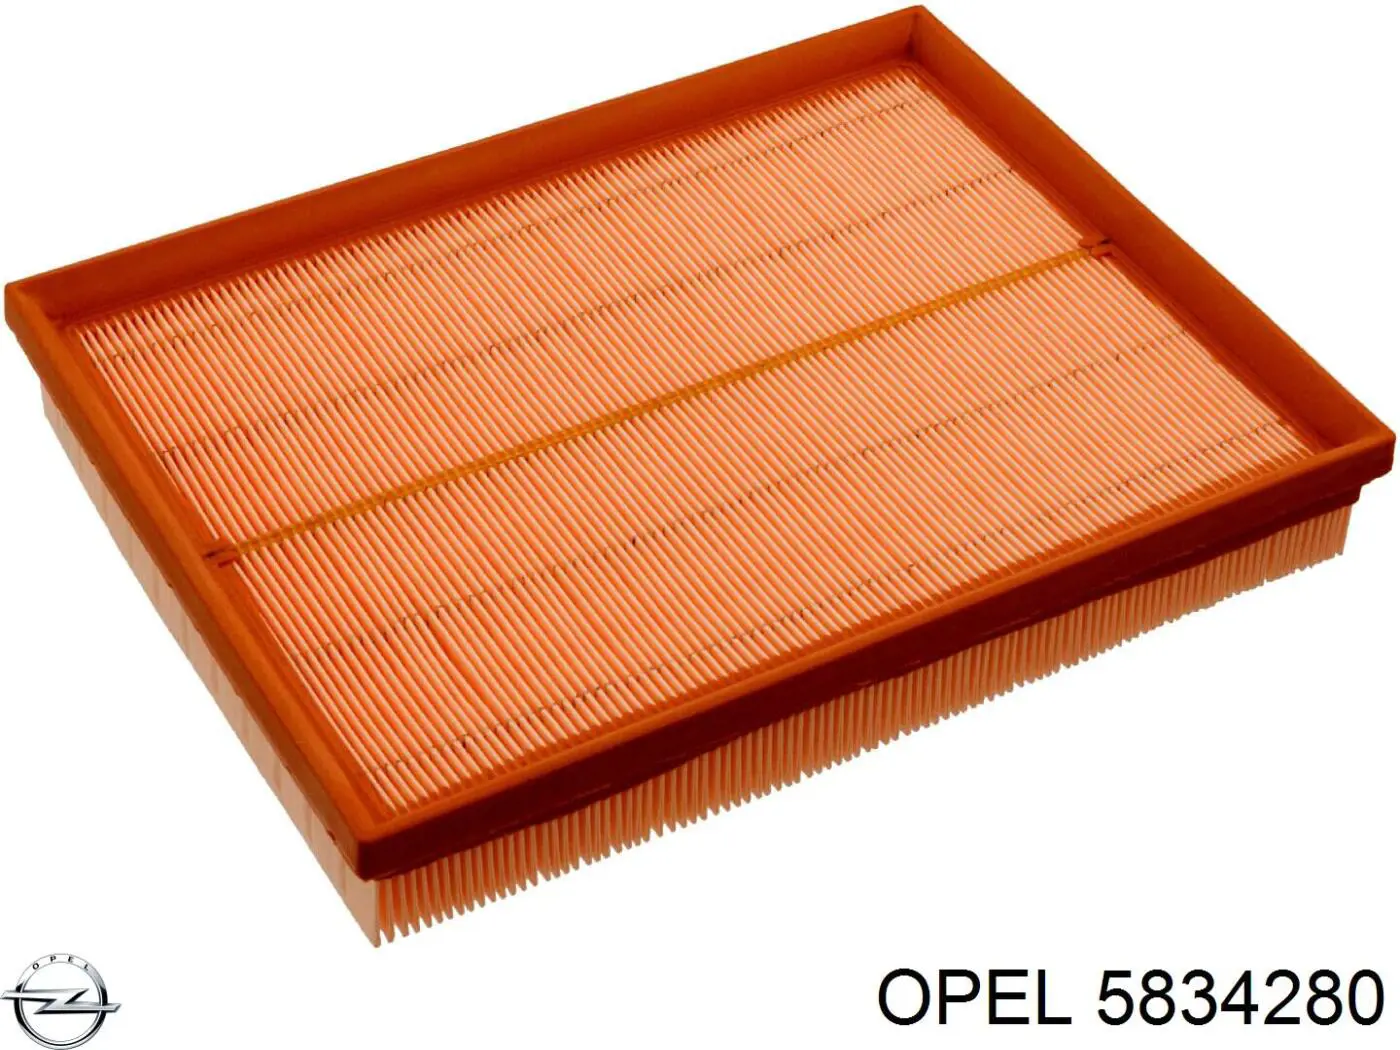 5834280 Opel filtro de aire